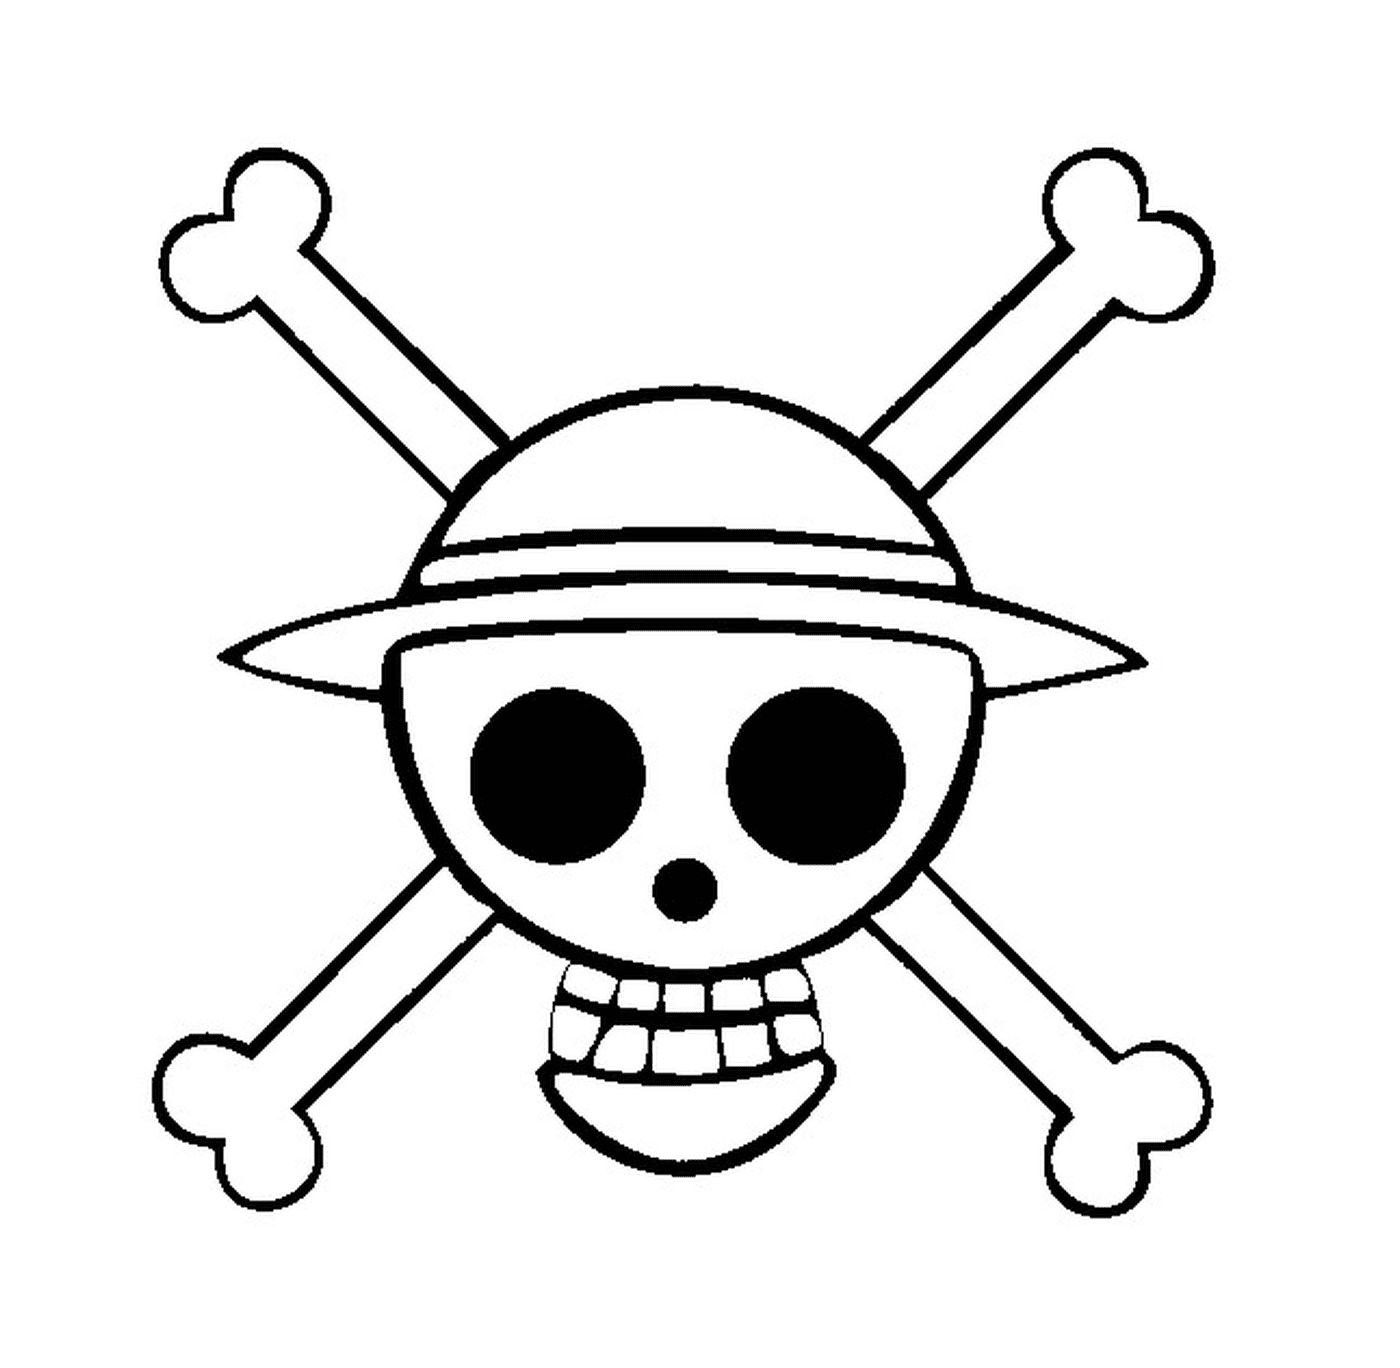  一块徽标,海盗标志 